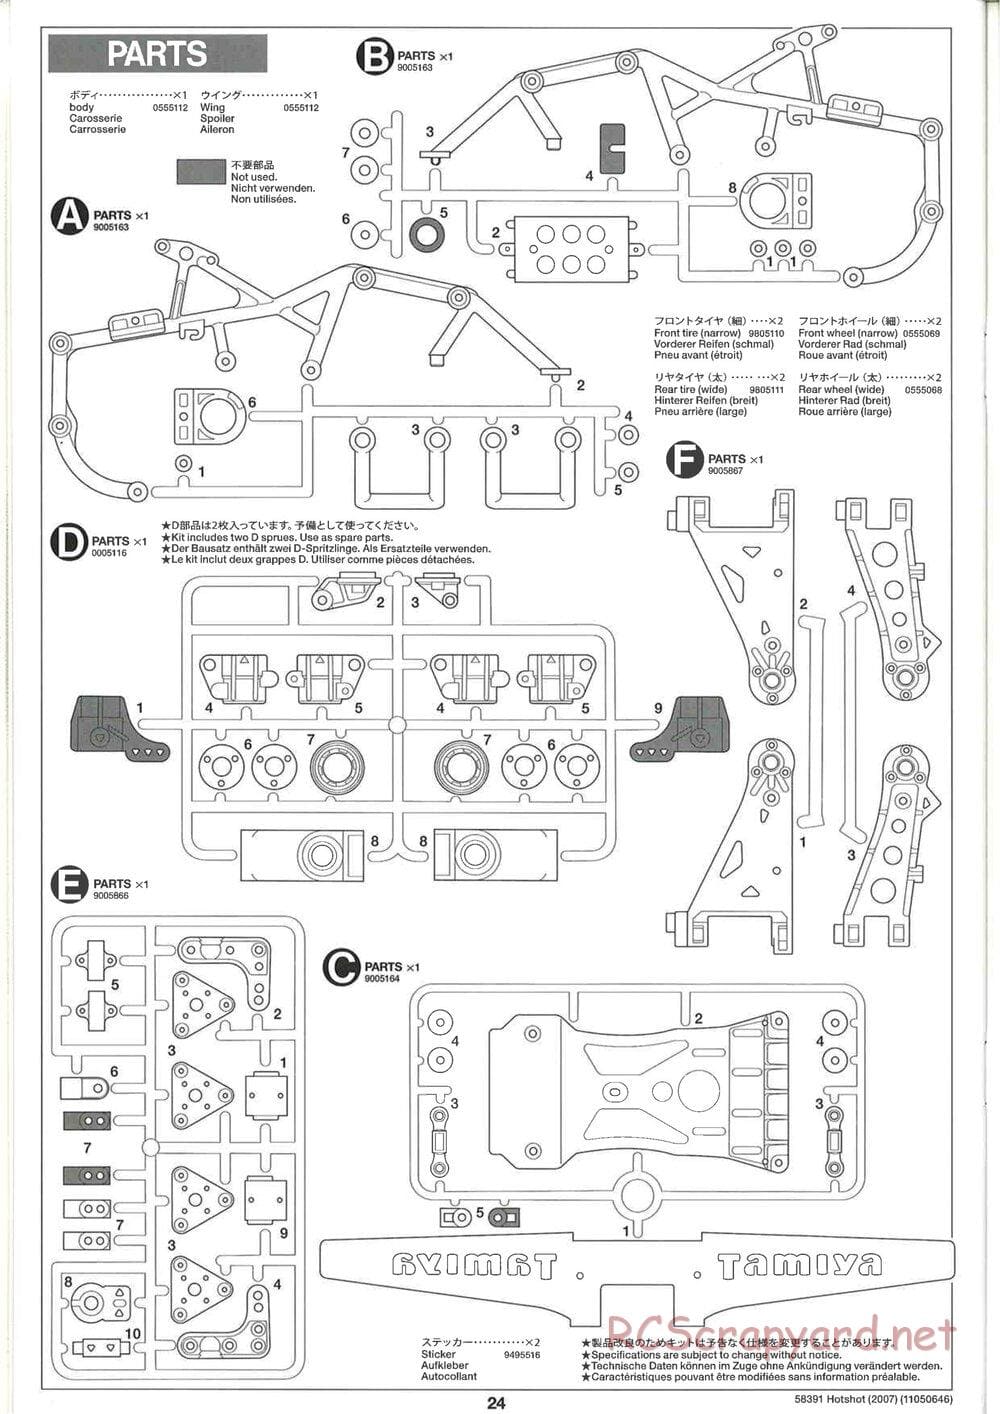 Tamiya - Hotshot - 2007 - HS Chassis - Manual - Page 24